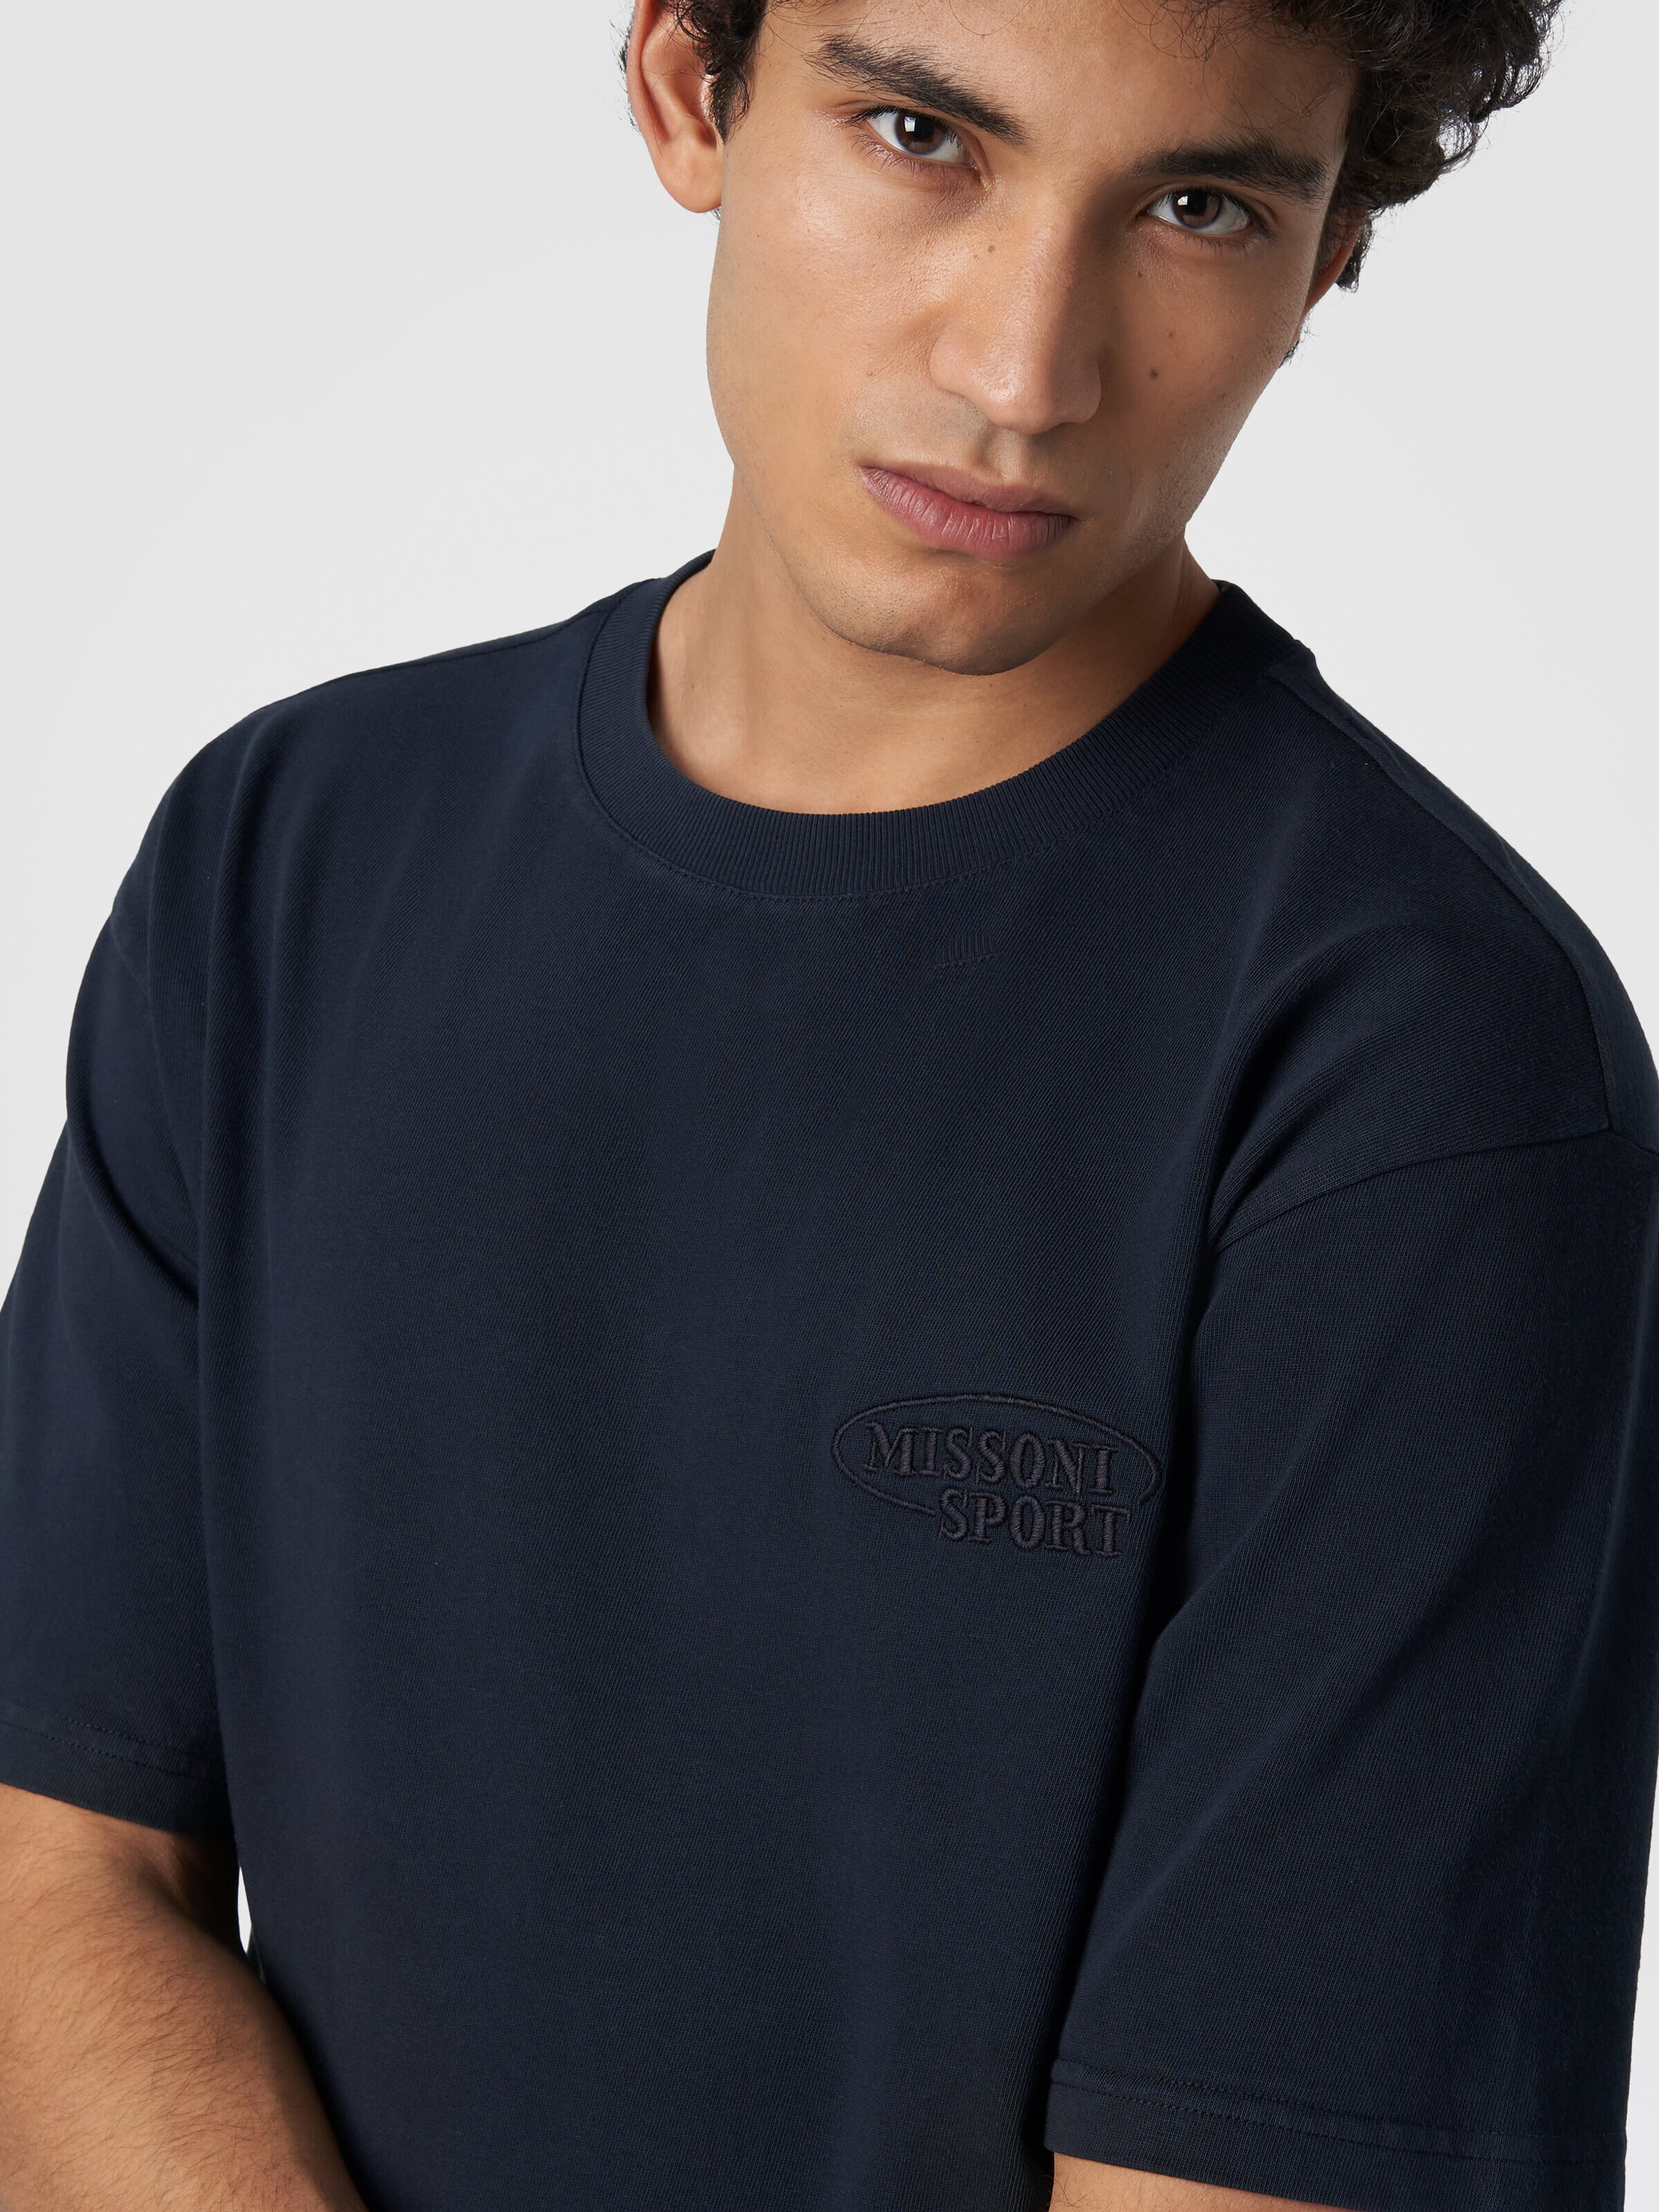 Baumwoll-T-Shirt mit Rundhalsausschnitt und Logo, Marineblau  - 4